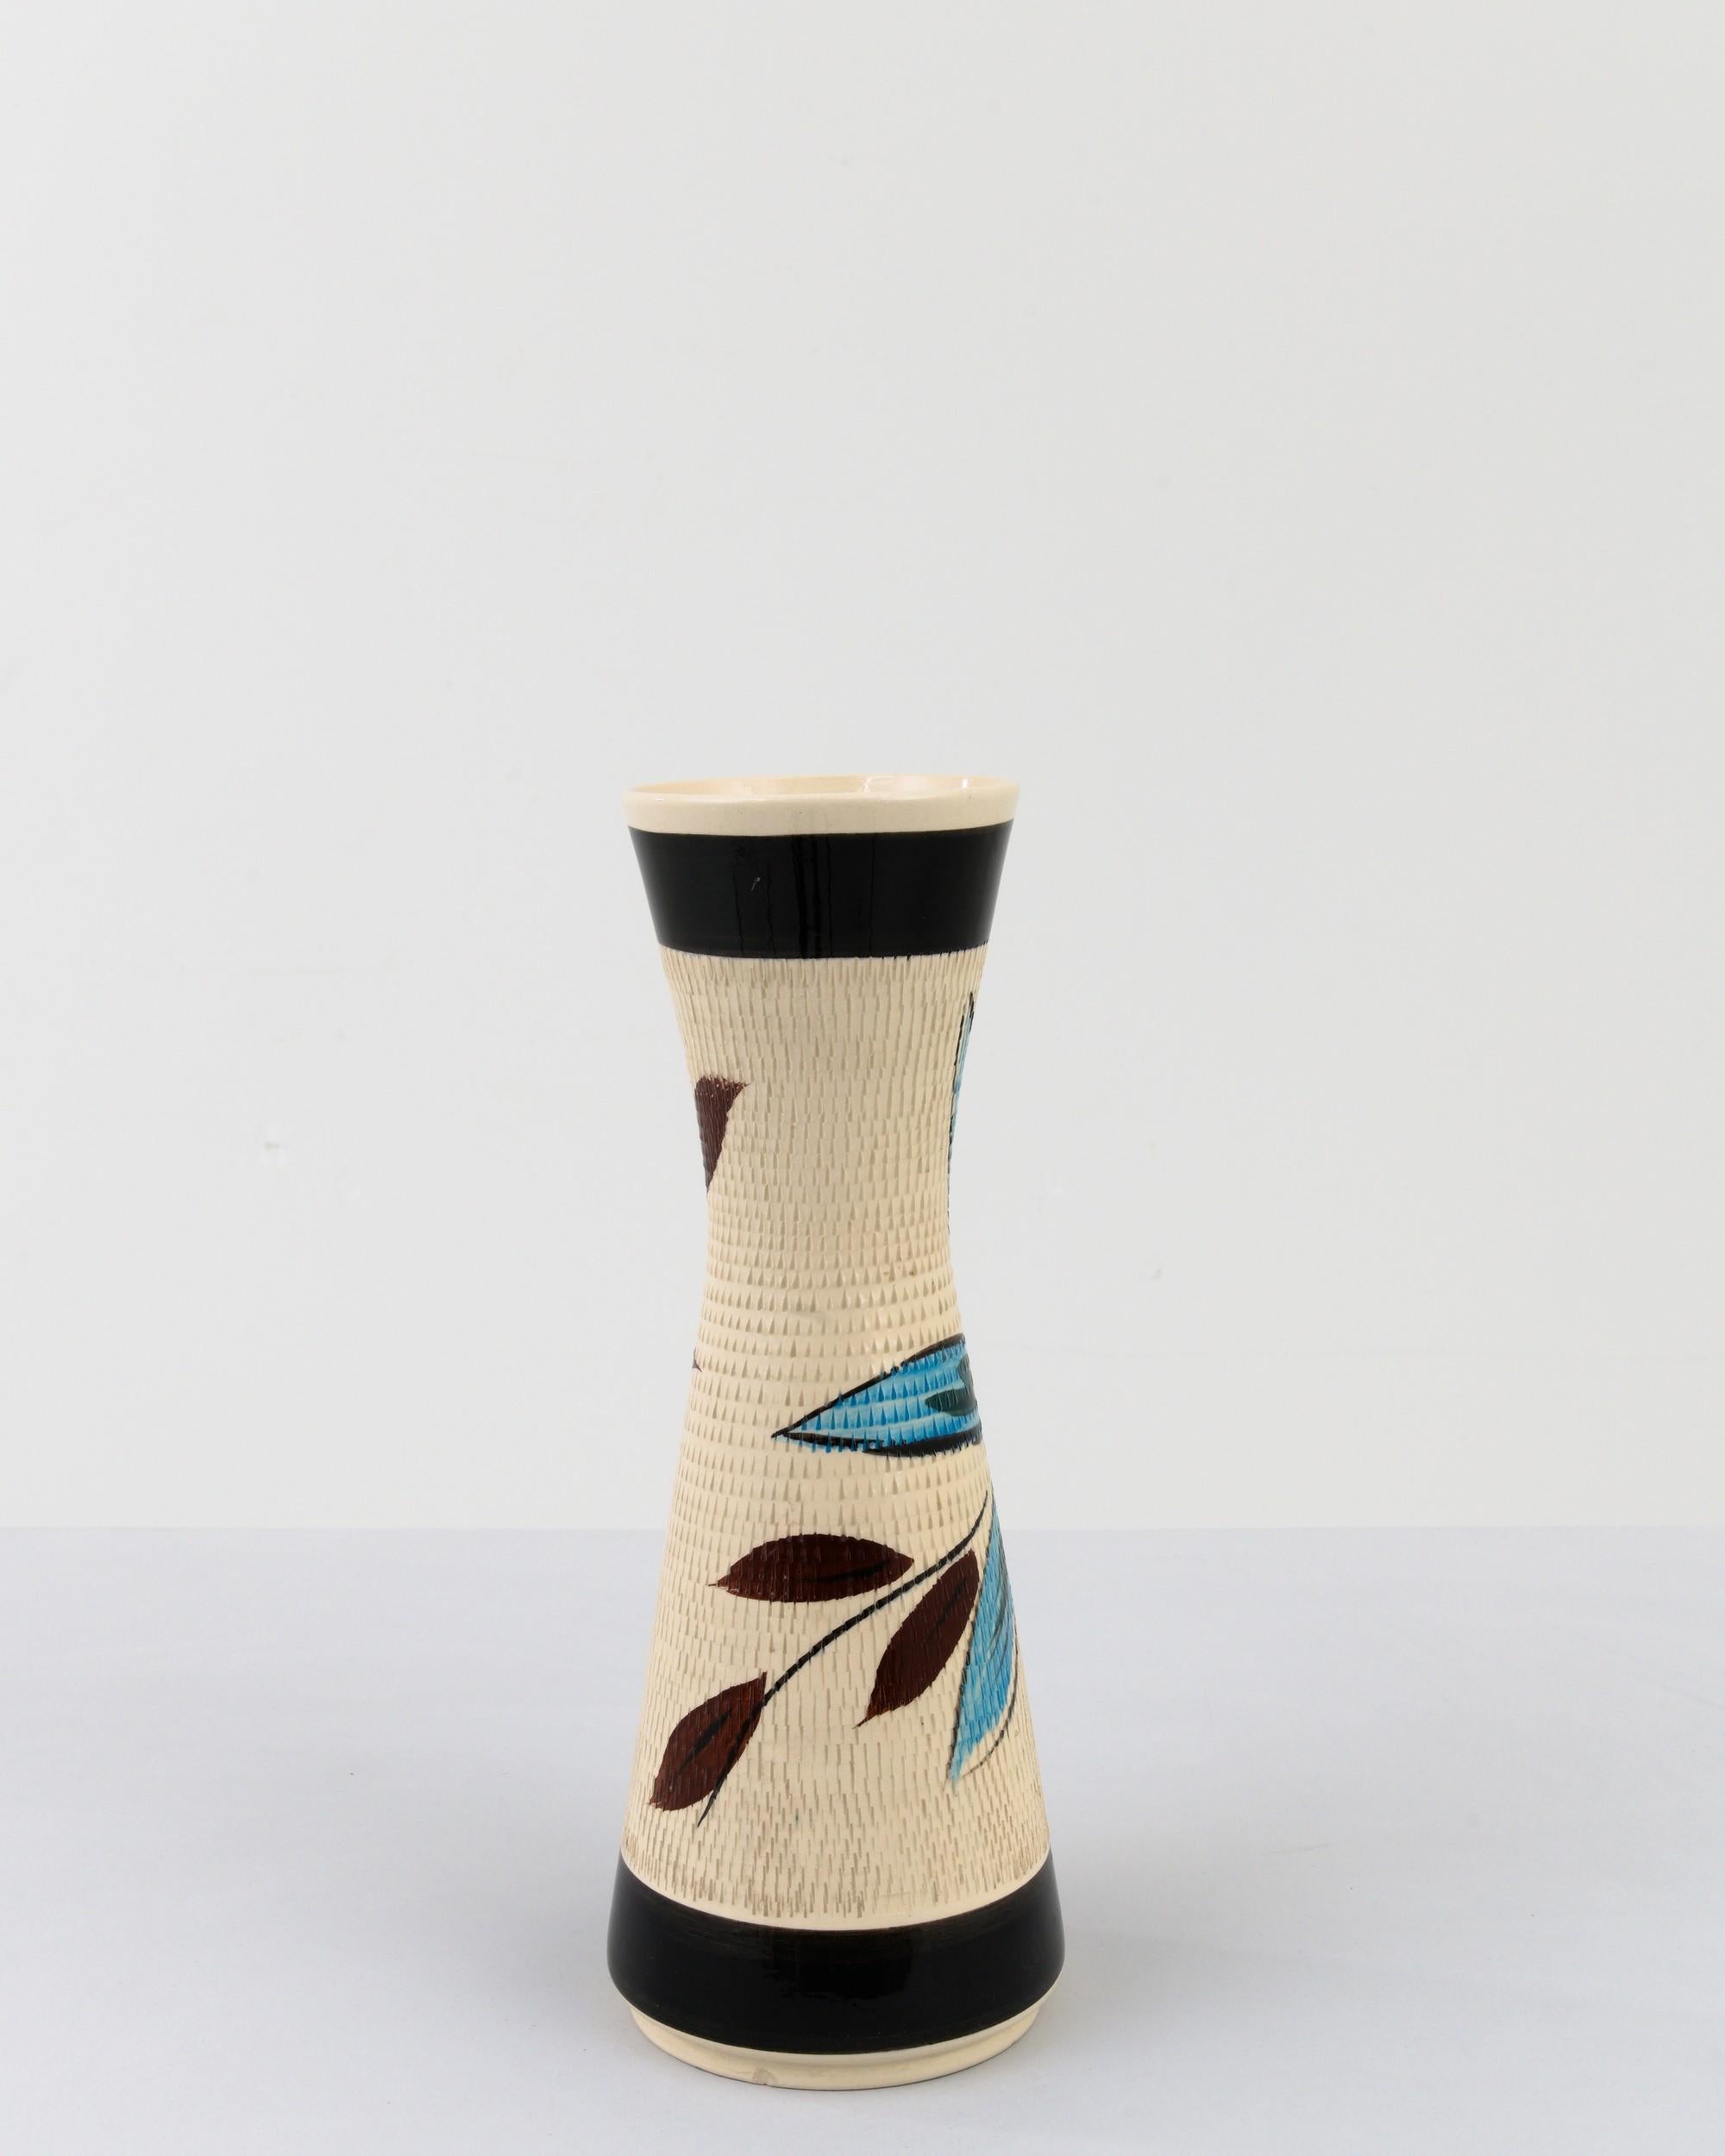 Vase en céramique datant du milieu du XXe siècle en Allemagne. Ni grand ni petit, ce pot fabriqué en Studio reflète la main et le fait main ; la tactilité du processus et la vision de l'artiste - réalisée sur le tour du potier. La surface alvéolée